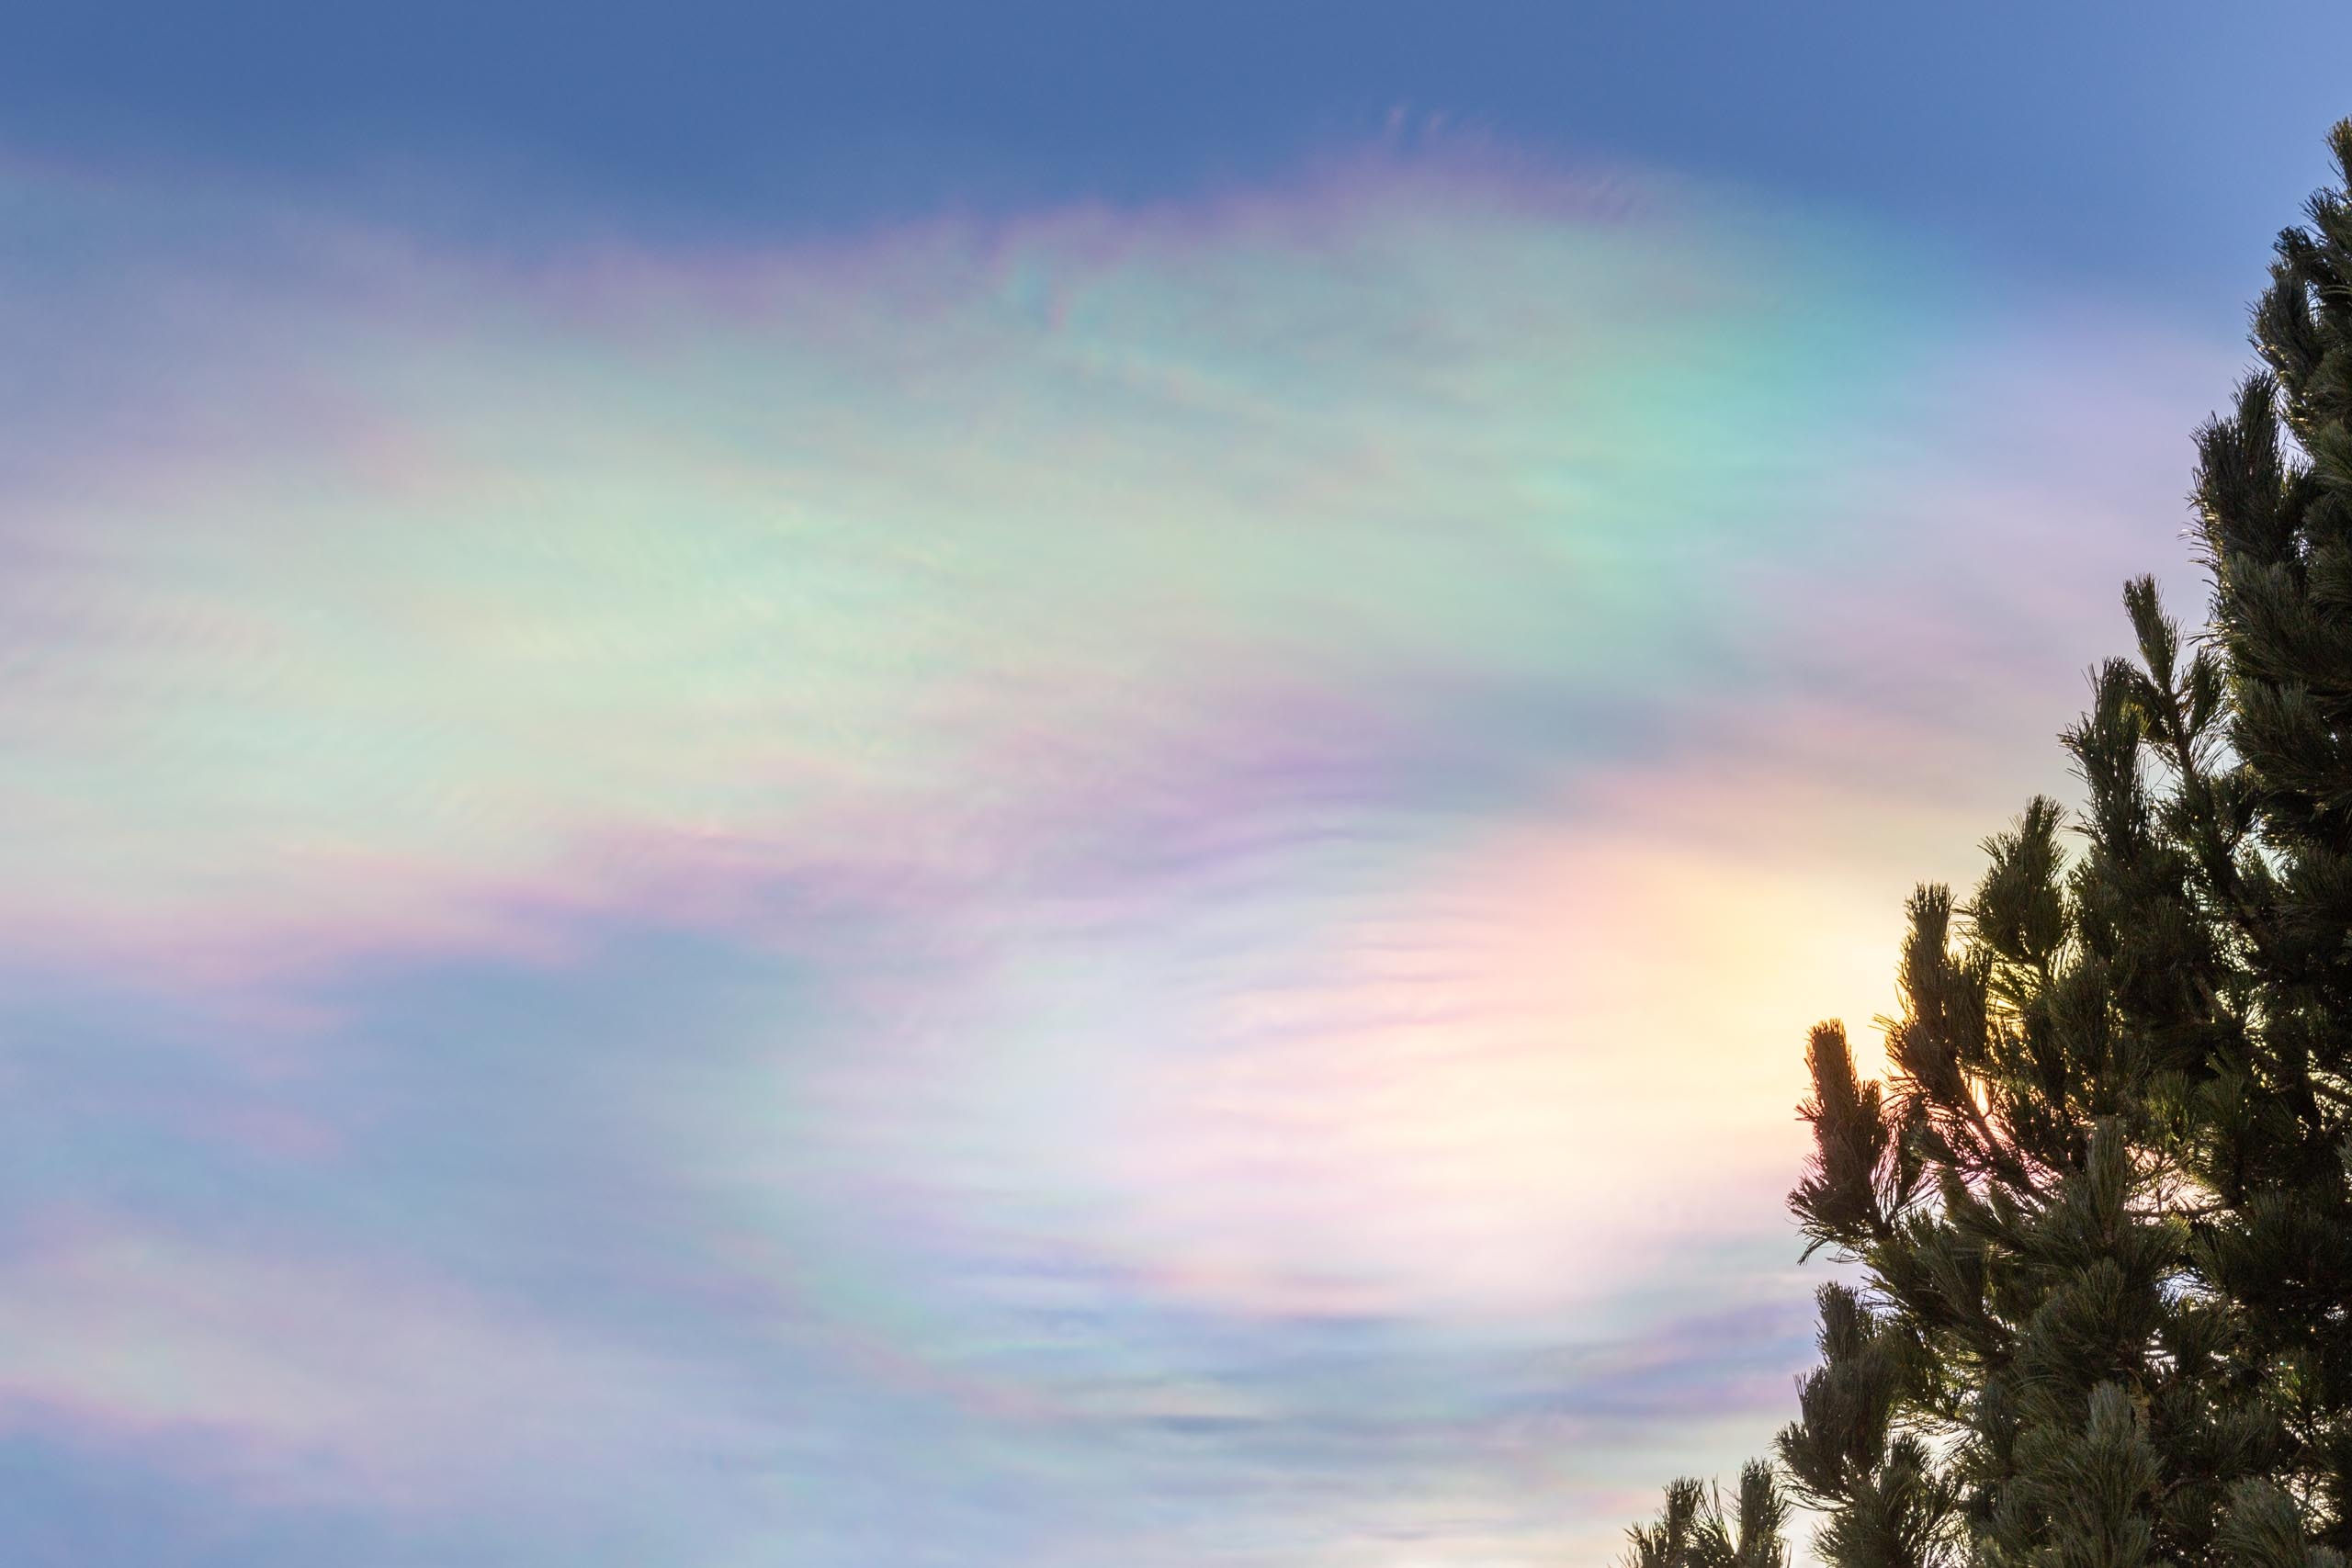 TAT iridescent clouds 002